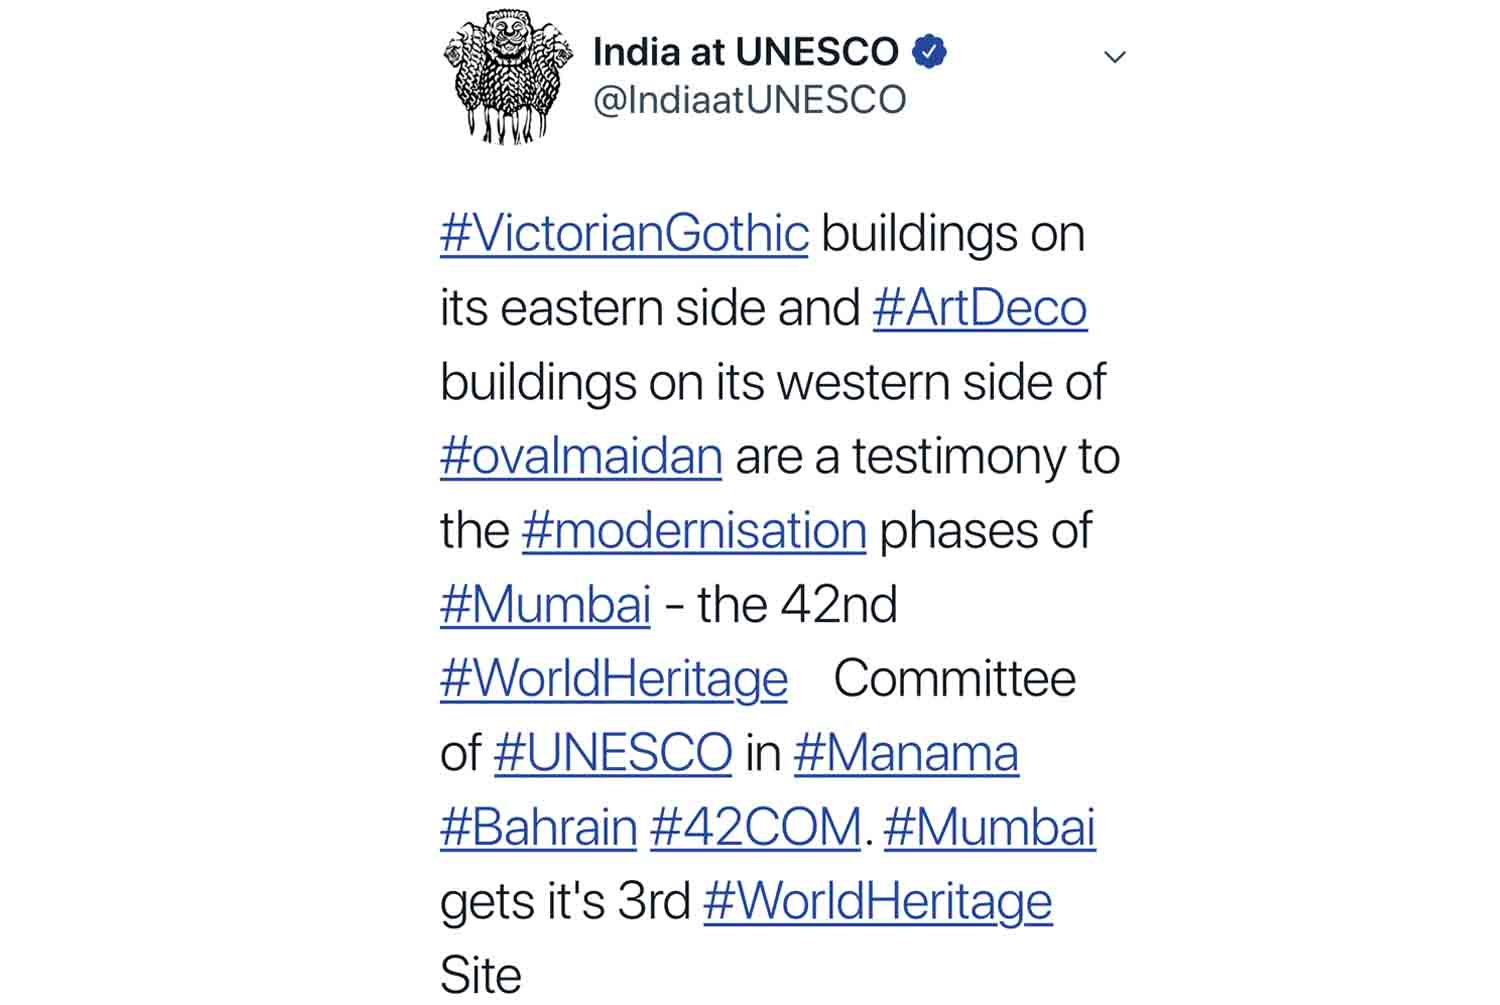 UNESCO Tweet's about the inscription